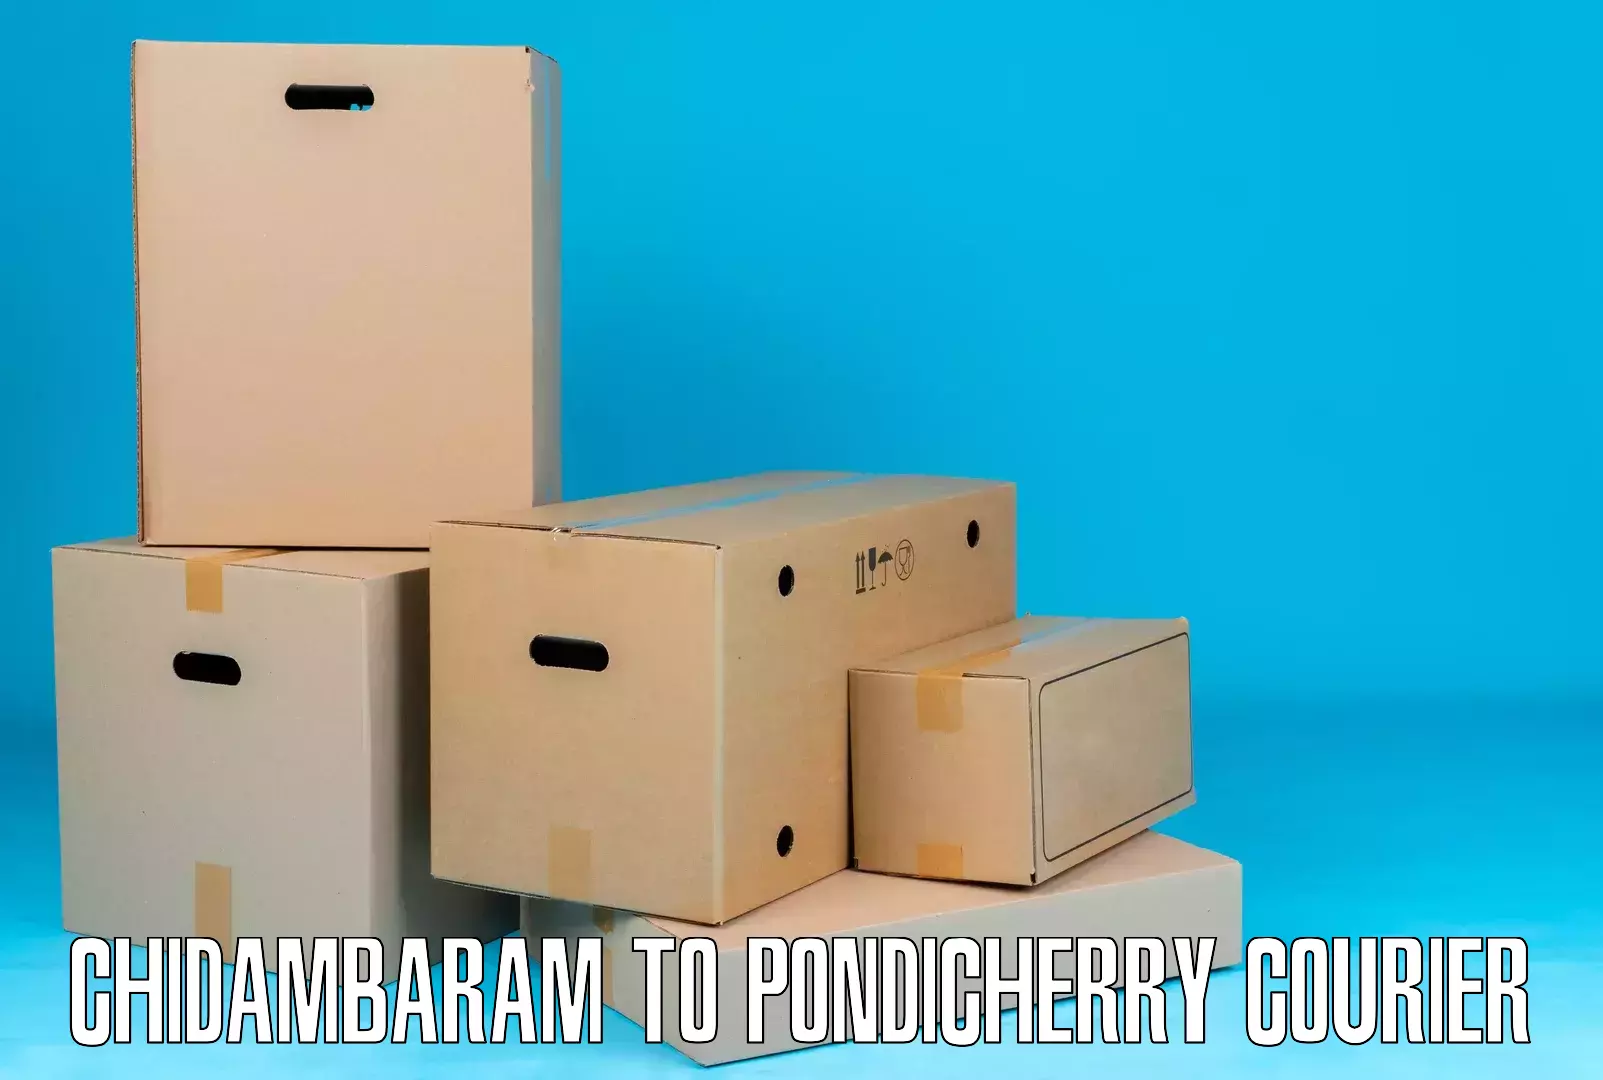 Package tracking Chidambaram to Pondicherry